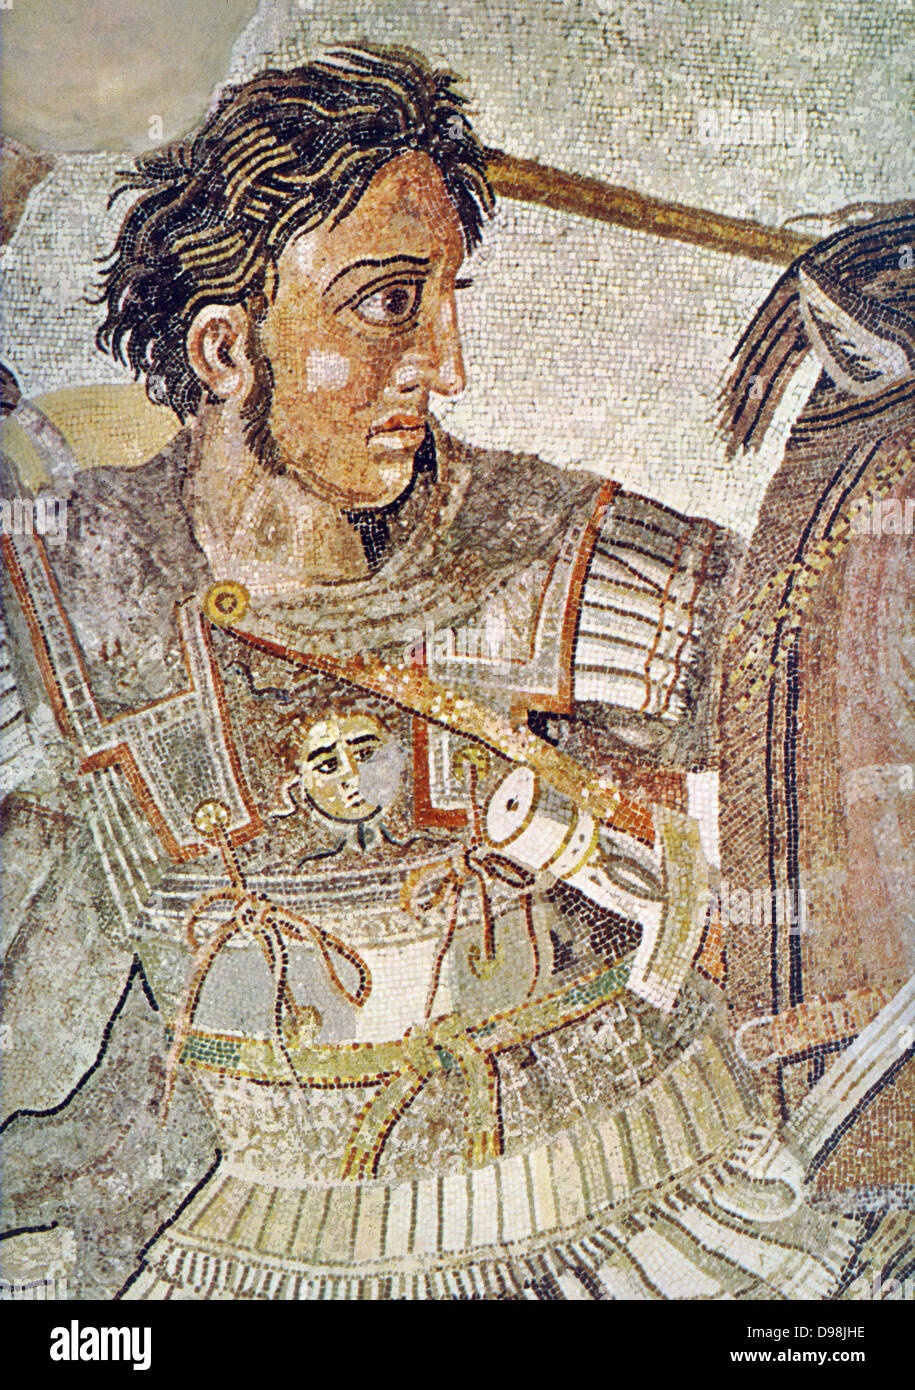 Il mosaico di Alexander, risalente a circa 100 BC, è un famoso Roman pavimento a mosaico, originariamente dalla Casa del Fauno di Pompei. Esso raffigura una battaglia tra gli eserciti di Alessandro Magno e Dario III di Persia e di misure 5,82 x 3.13m (19 piedi x 10 piedi 3a). Il mosaico illustra una battaglia in cui Alexander di fronte e ha tentato di catturare o uccidere Dario. Alexander ha sconfitto il persiano leader due volte, prima a 333 BC Battaglia di Isso e due anni più tardi nella battaglia di Gaugamela. Il lavoro è creduta tradizionalmente per mostrare la battaglia di Isso. Dettaglio mostrante Alexander Foto Stock